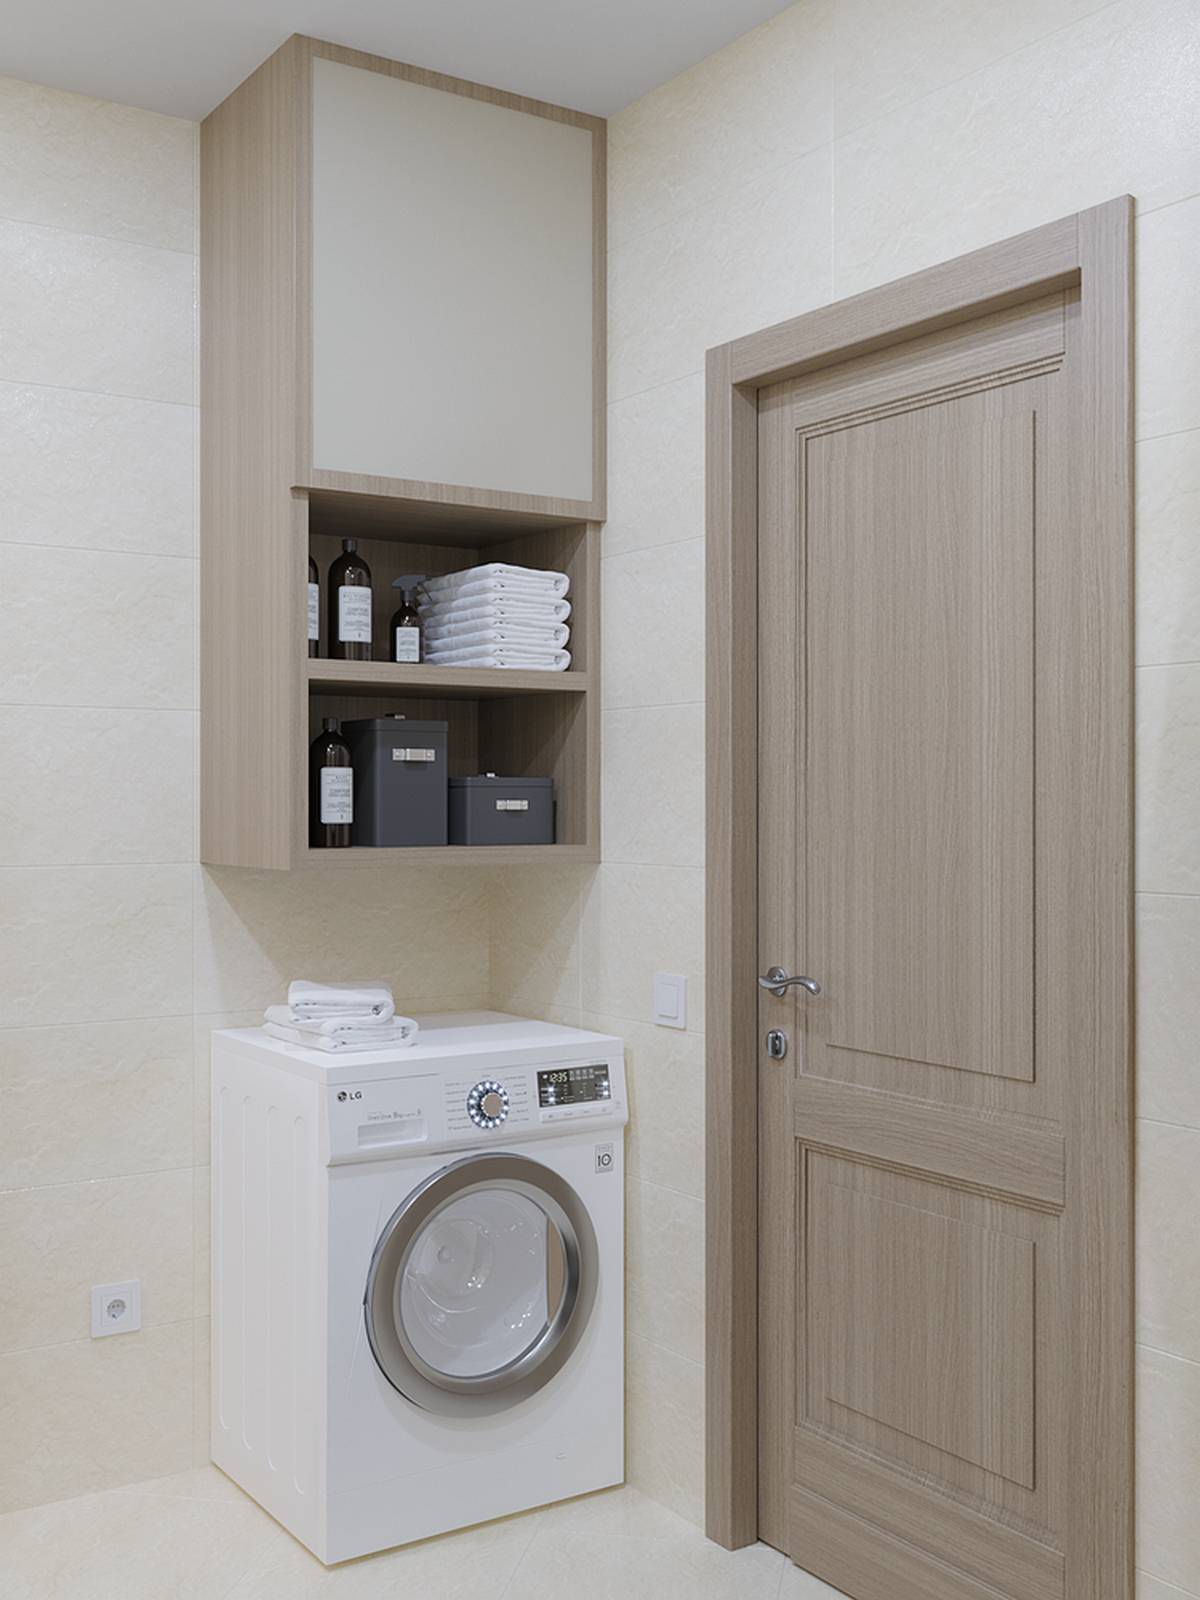 Phòng tắm lựa chọn gam màu trung tính như be, gỗ, trắng,... để tạo sự nhẹ nhàng, thanh lịch. Chiếc máy giặt được bố trí ngay lối ra vào phòng tắm, bên trên là kệ lưu trữ thuận tiện.